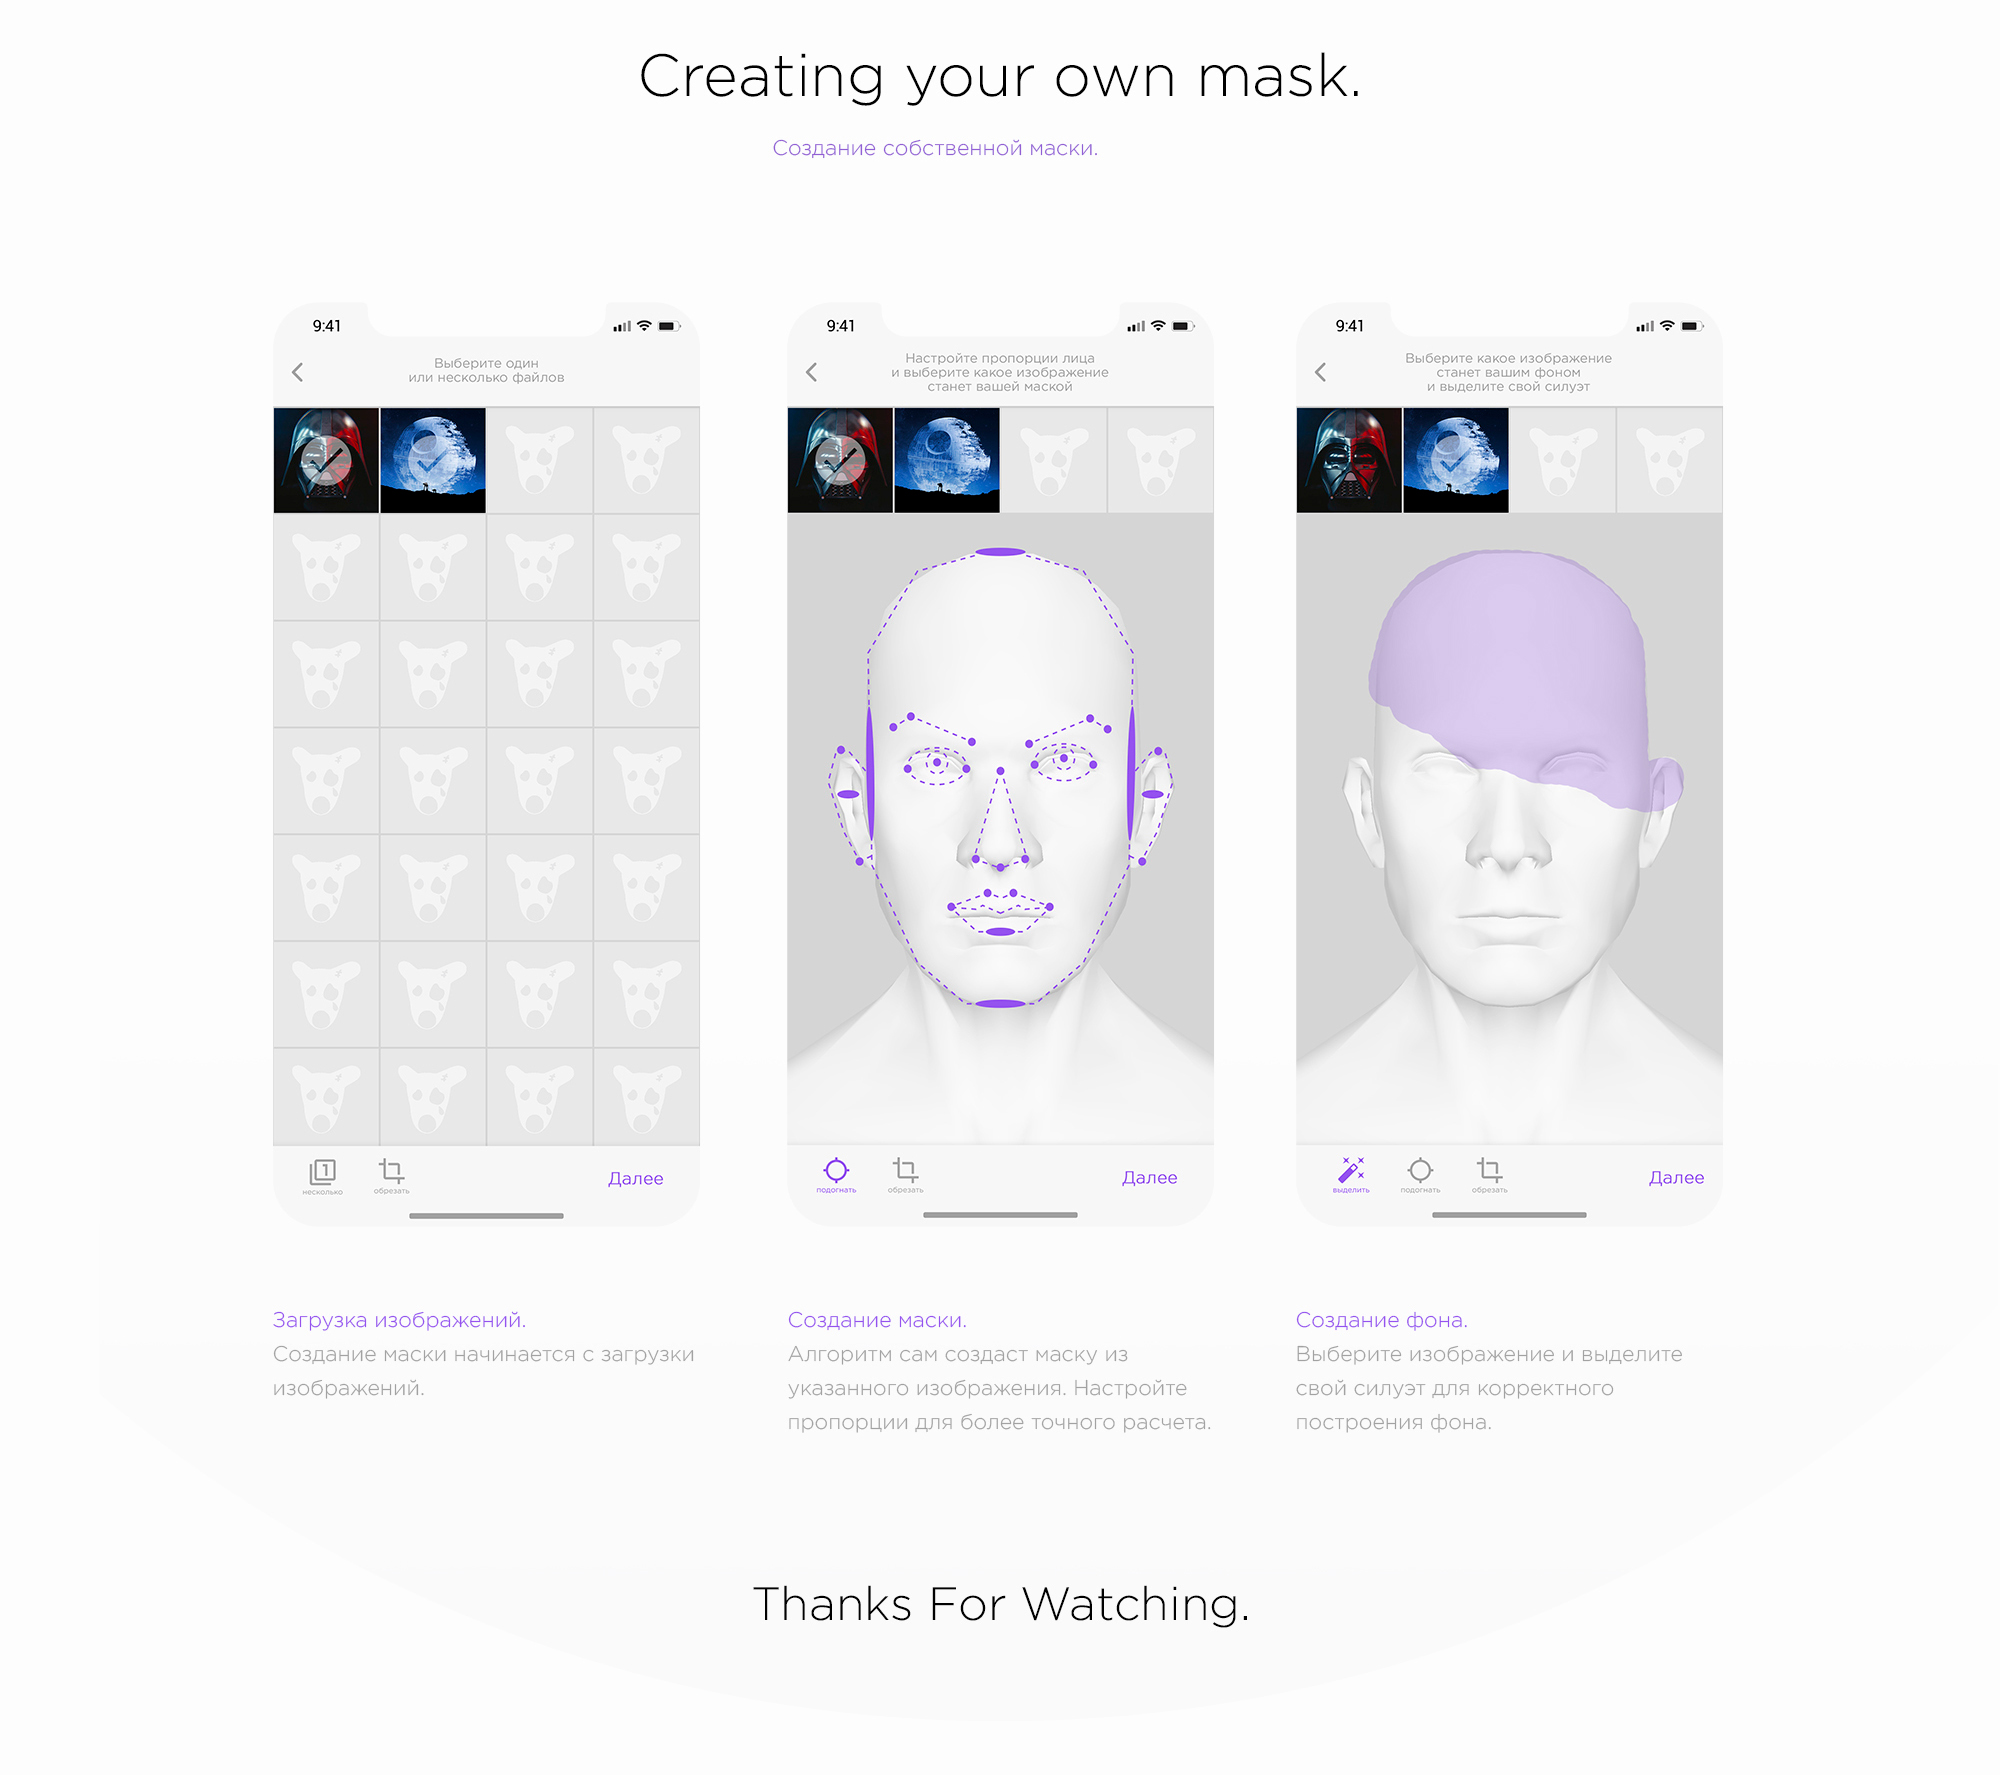 Приложение создавать маски как называется. Шаблон для создания маски в Инстаграм. Приложение для создания масок. Макет для создания маски для ВК. Программа для создания масок в Инстаграм.